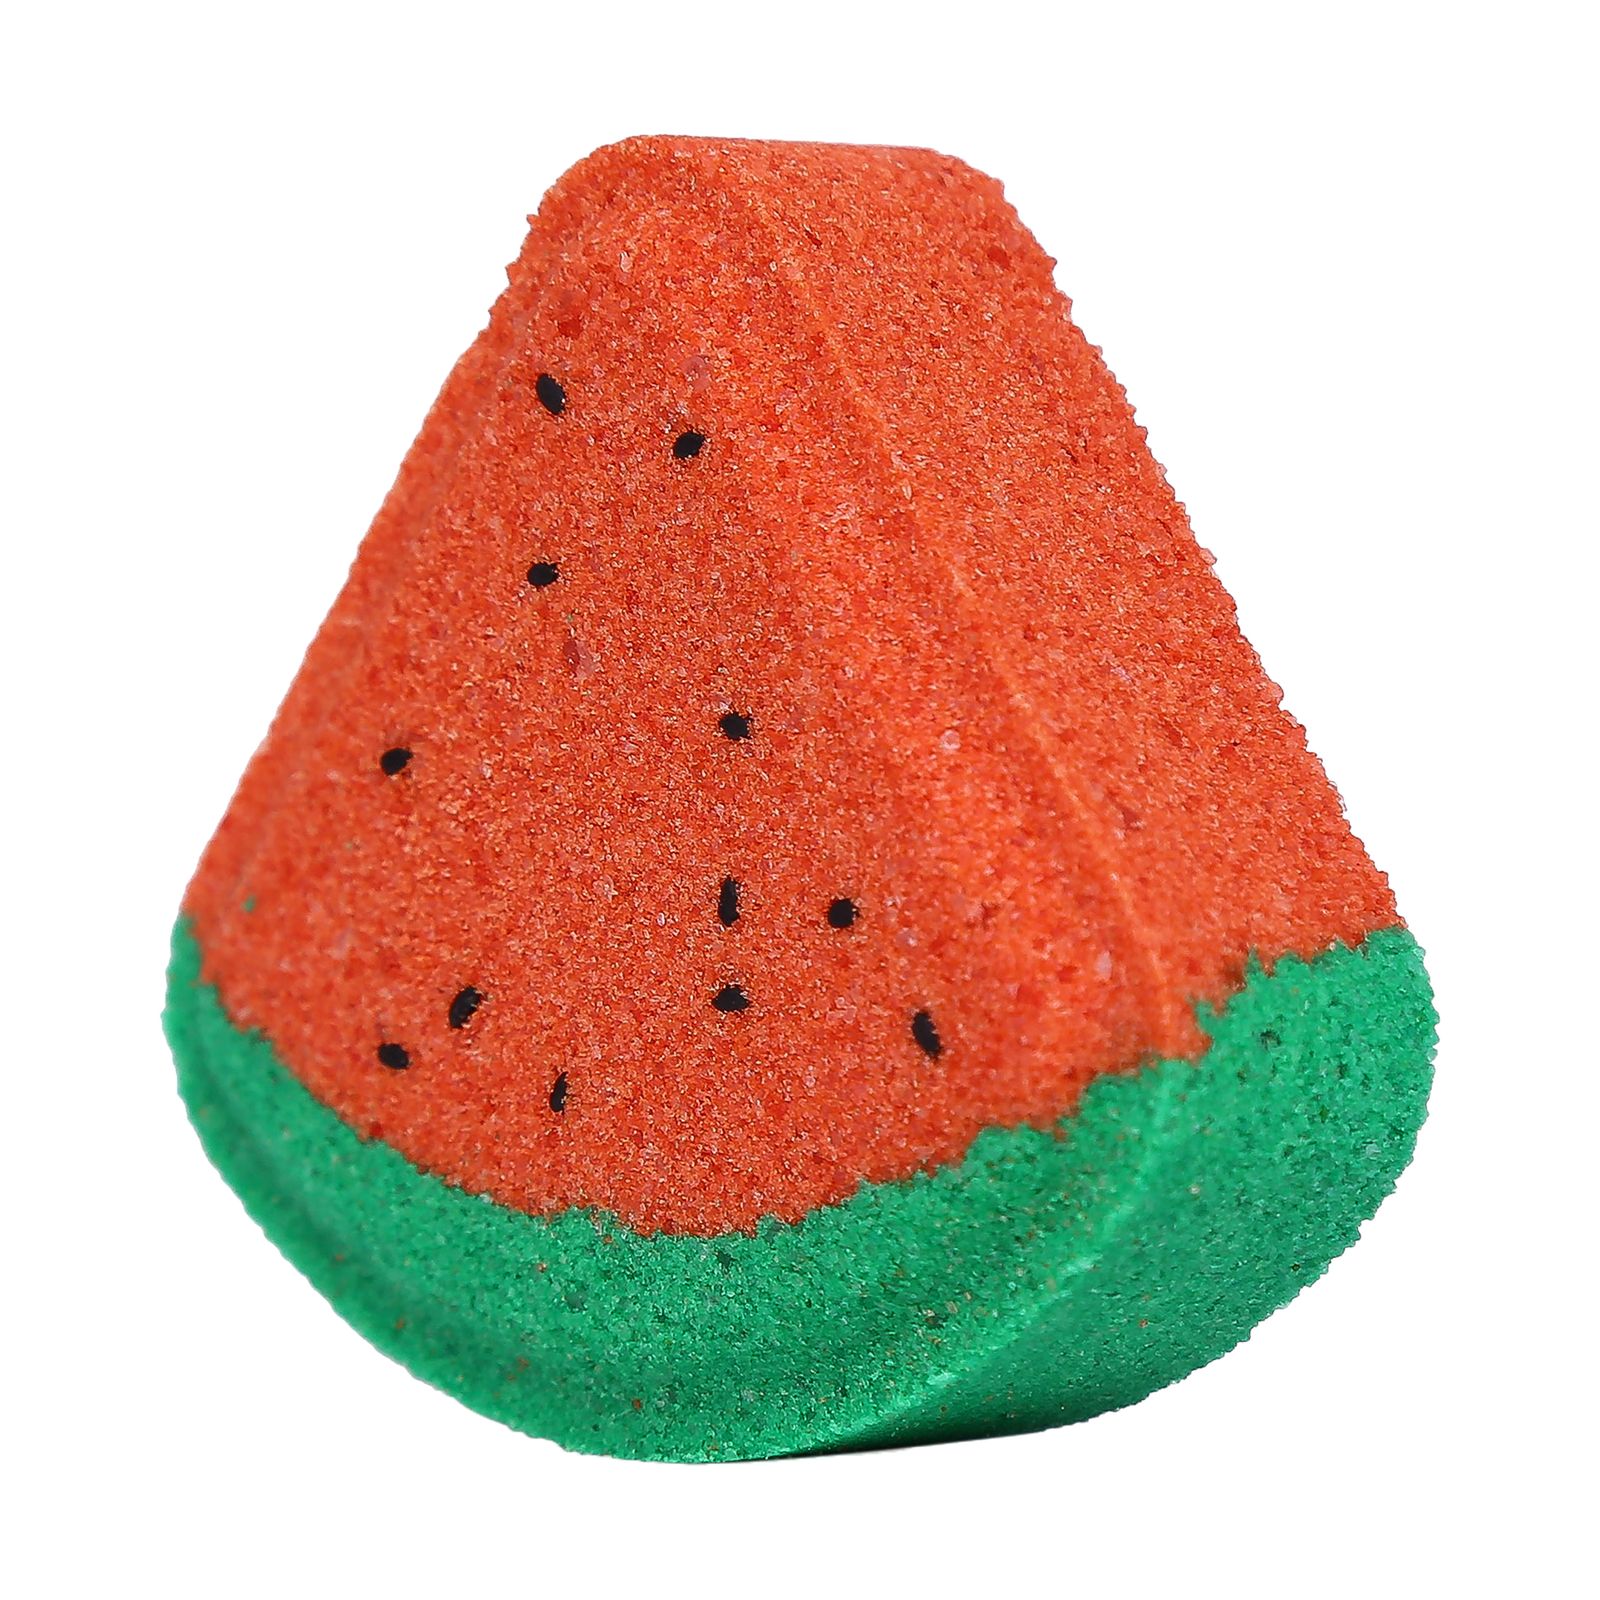 کوکتل پدیکور ژبن پلاس مدل Watermelon وزن 480 گرم بسته 8 عددی -  - 8